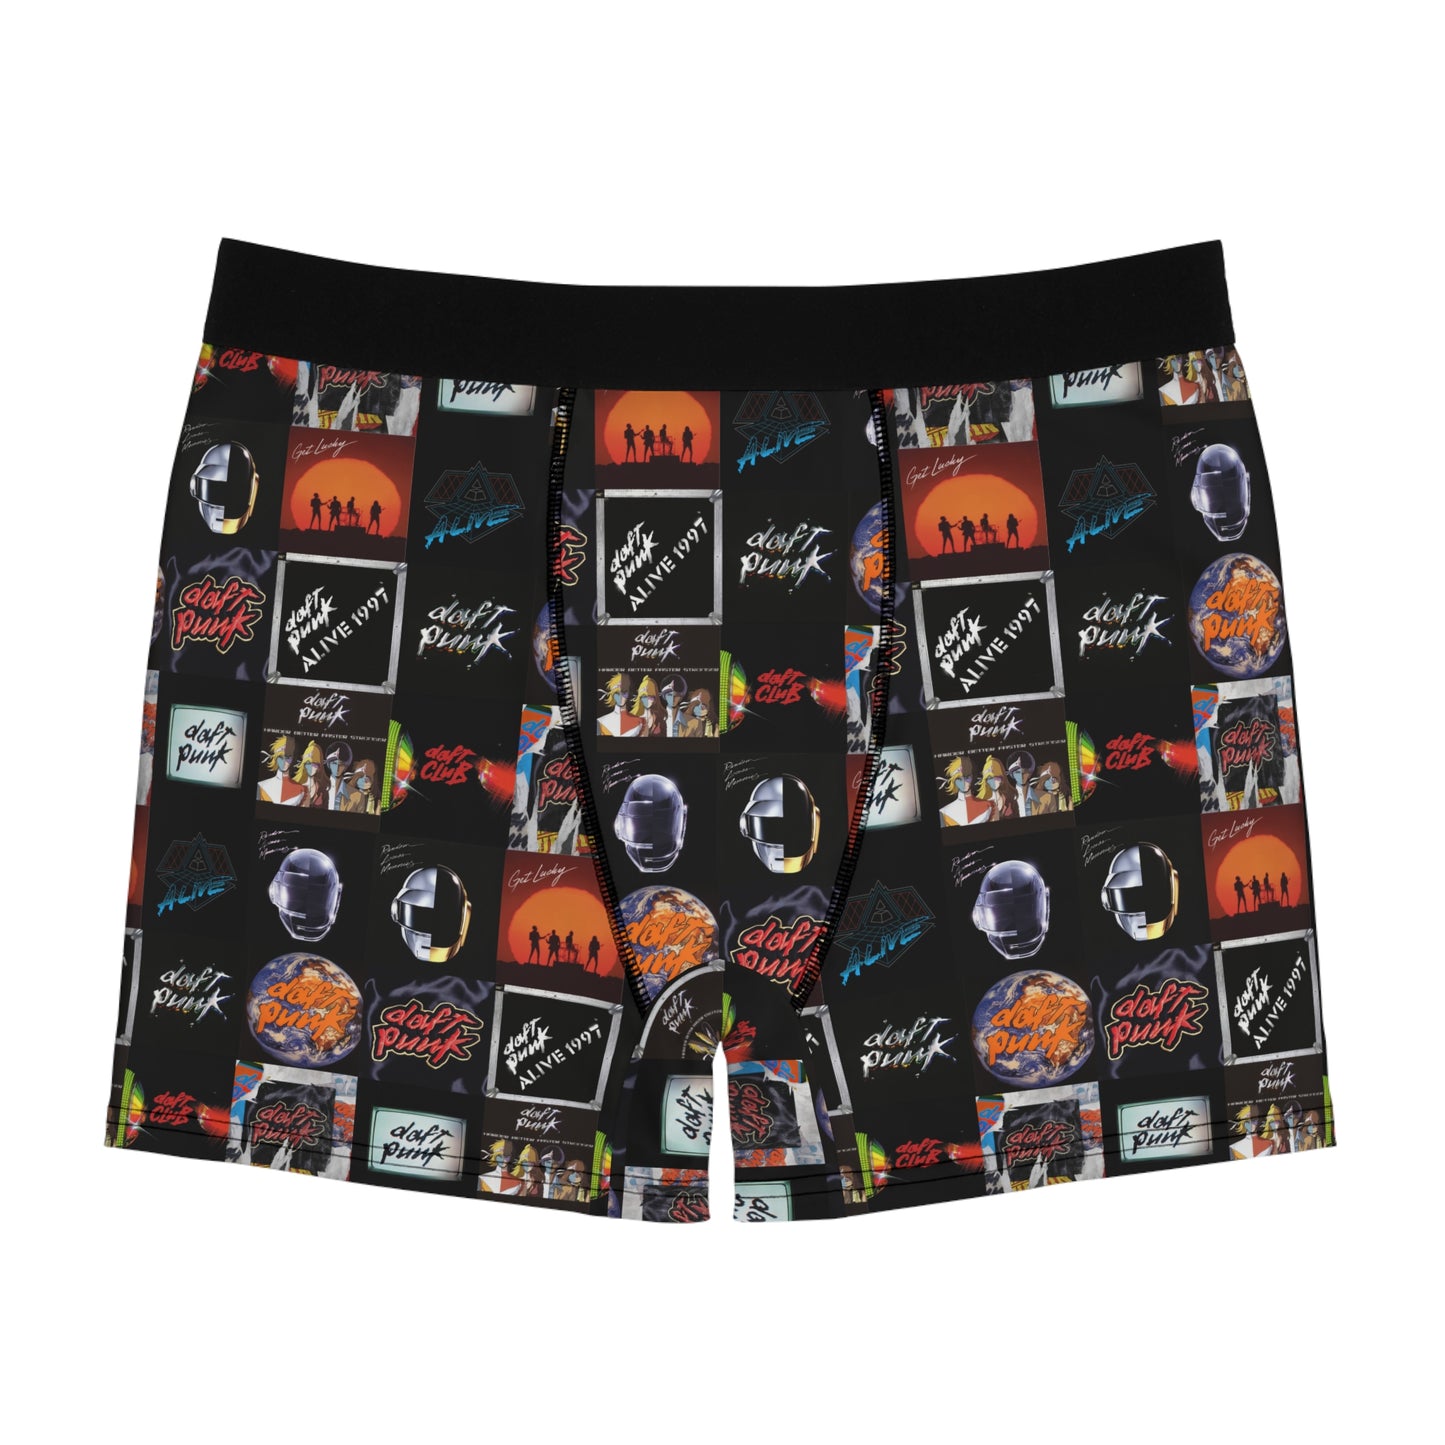 Daft Punk Album Cover Art Collage Men's Boxer Briefs Underwear